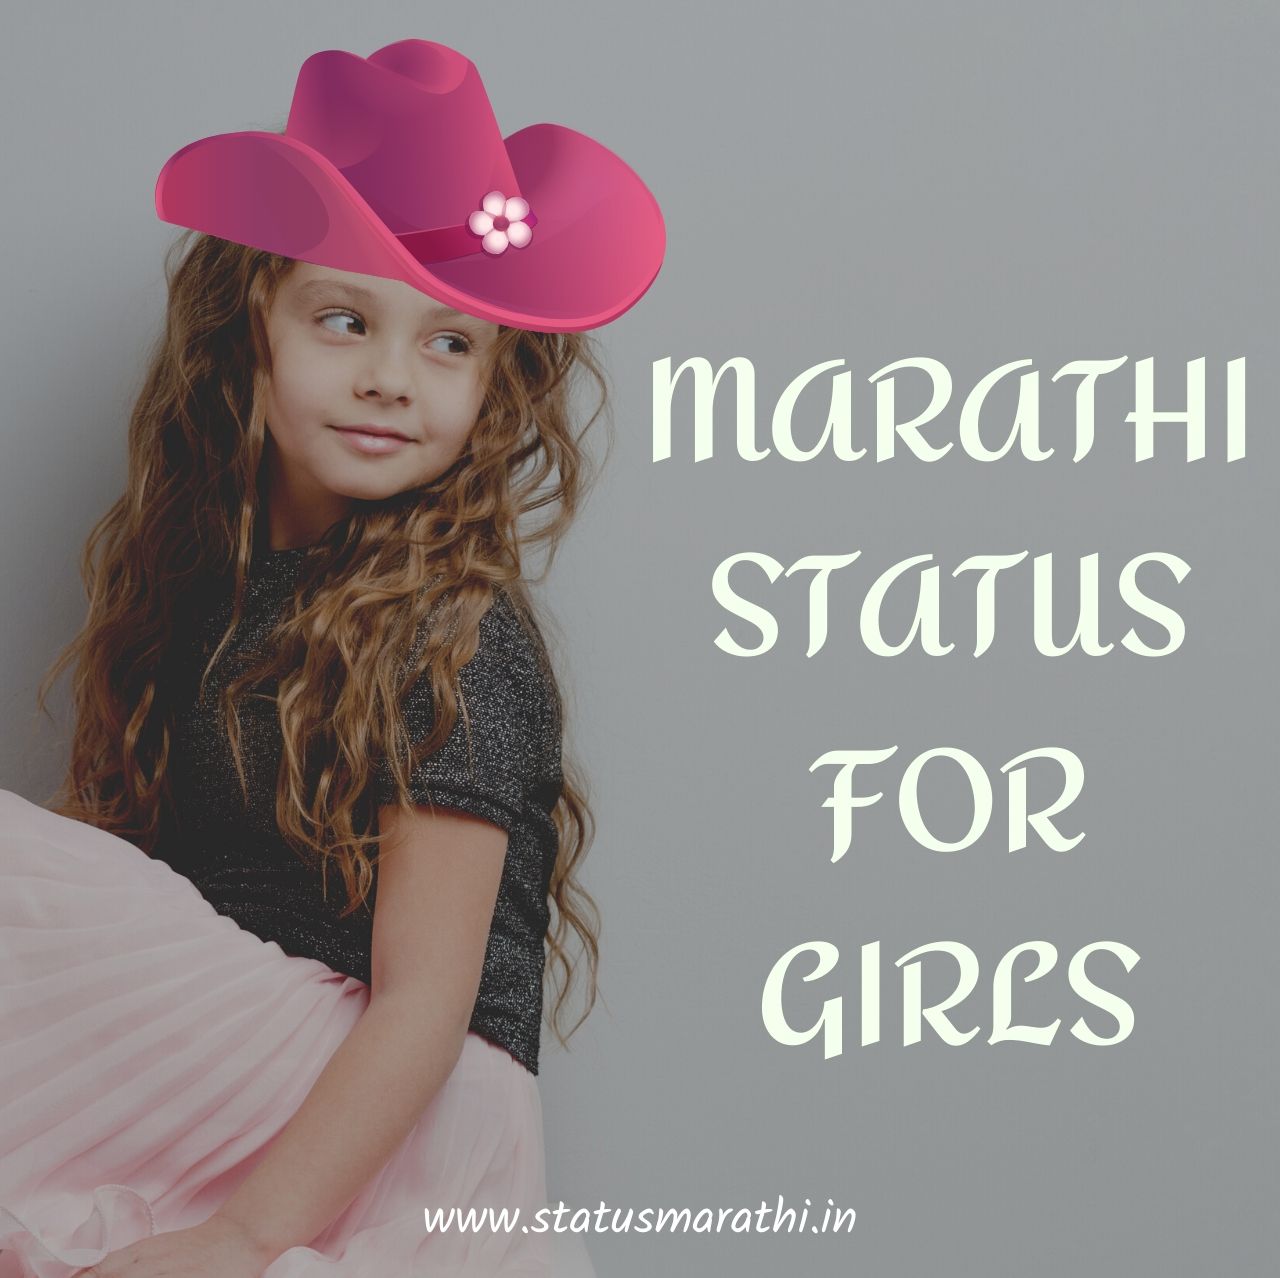 MARATHI STATUS FOR GIRLS